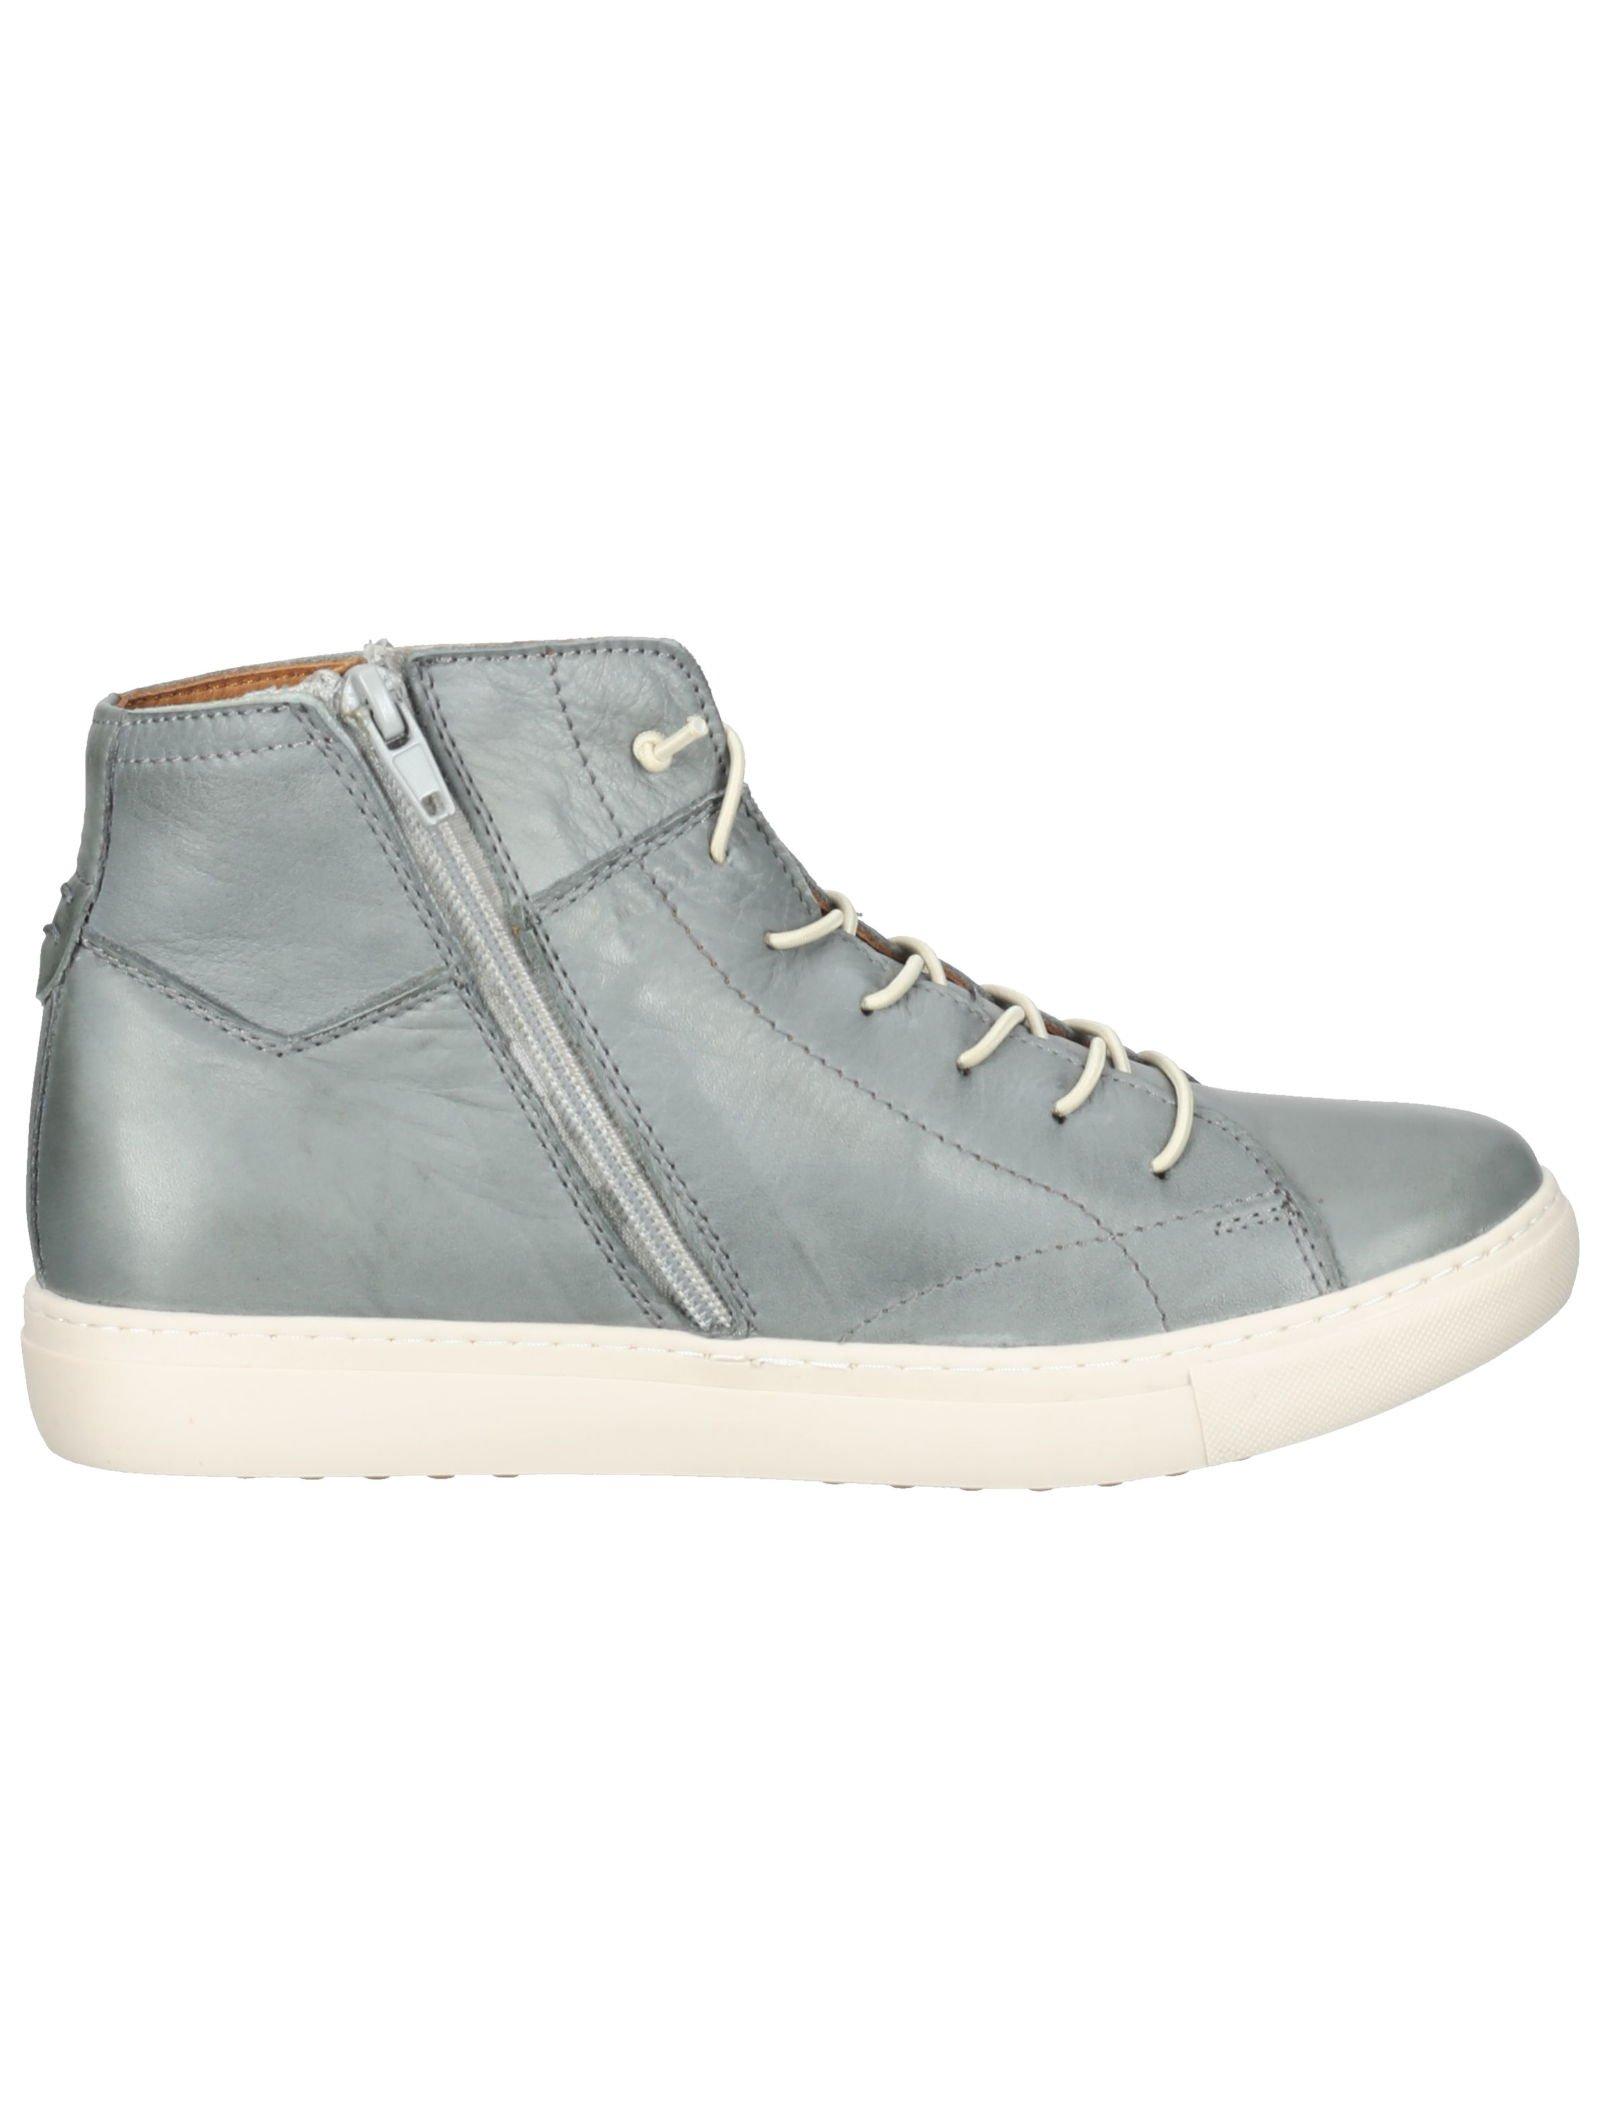 Cosmos Comfort  Sneaker 6179-502 